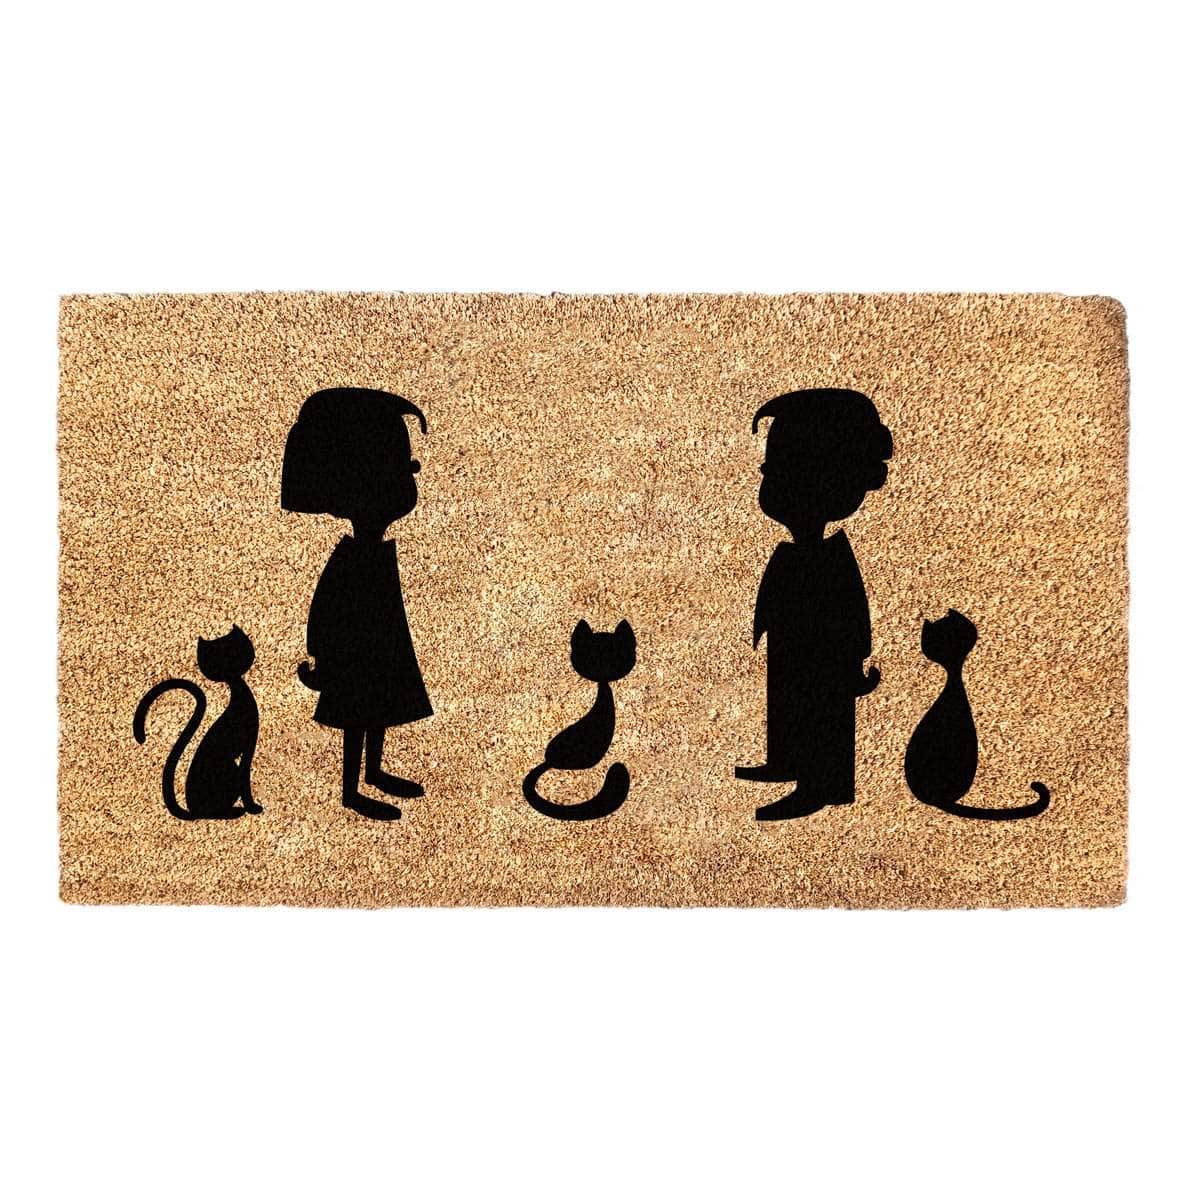 Cartoon Kids and Cats Doormat - Family Doormat